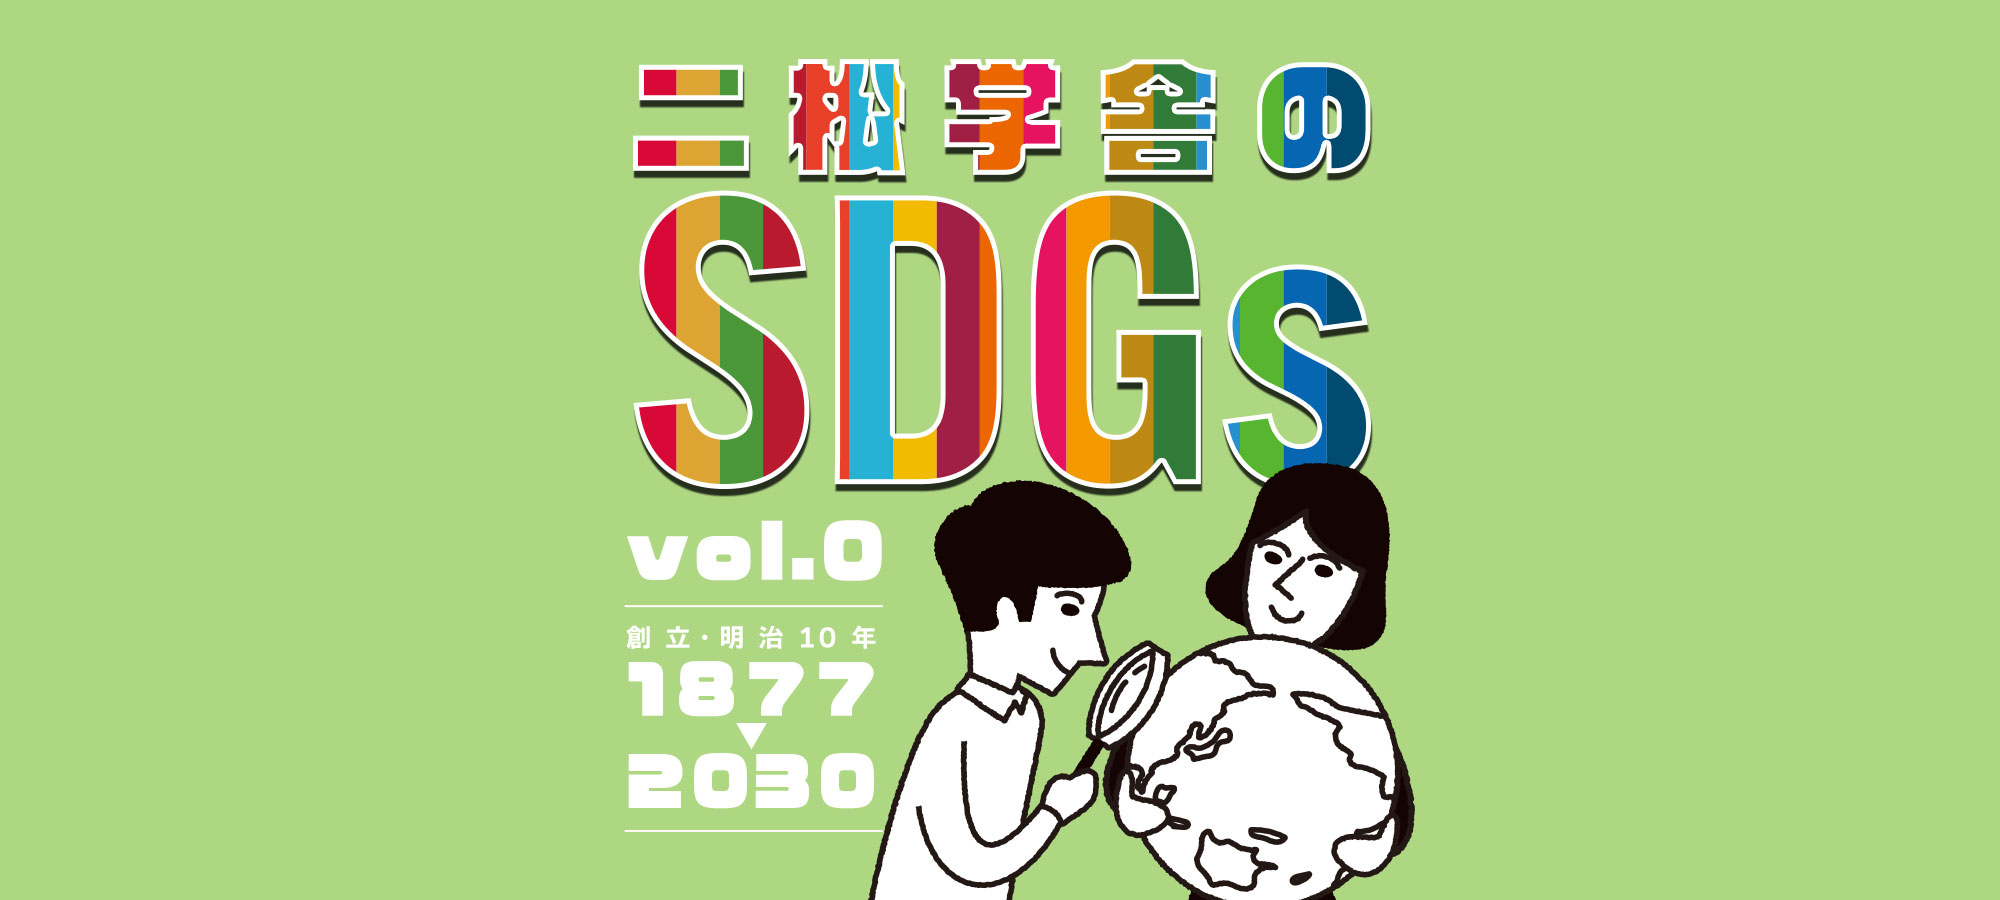 二松学舎のSDGs vol.0